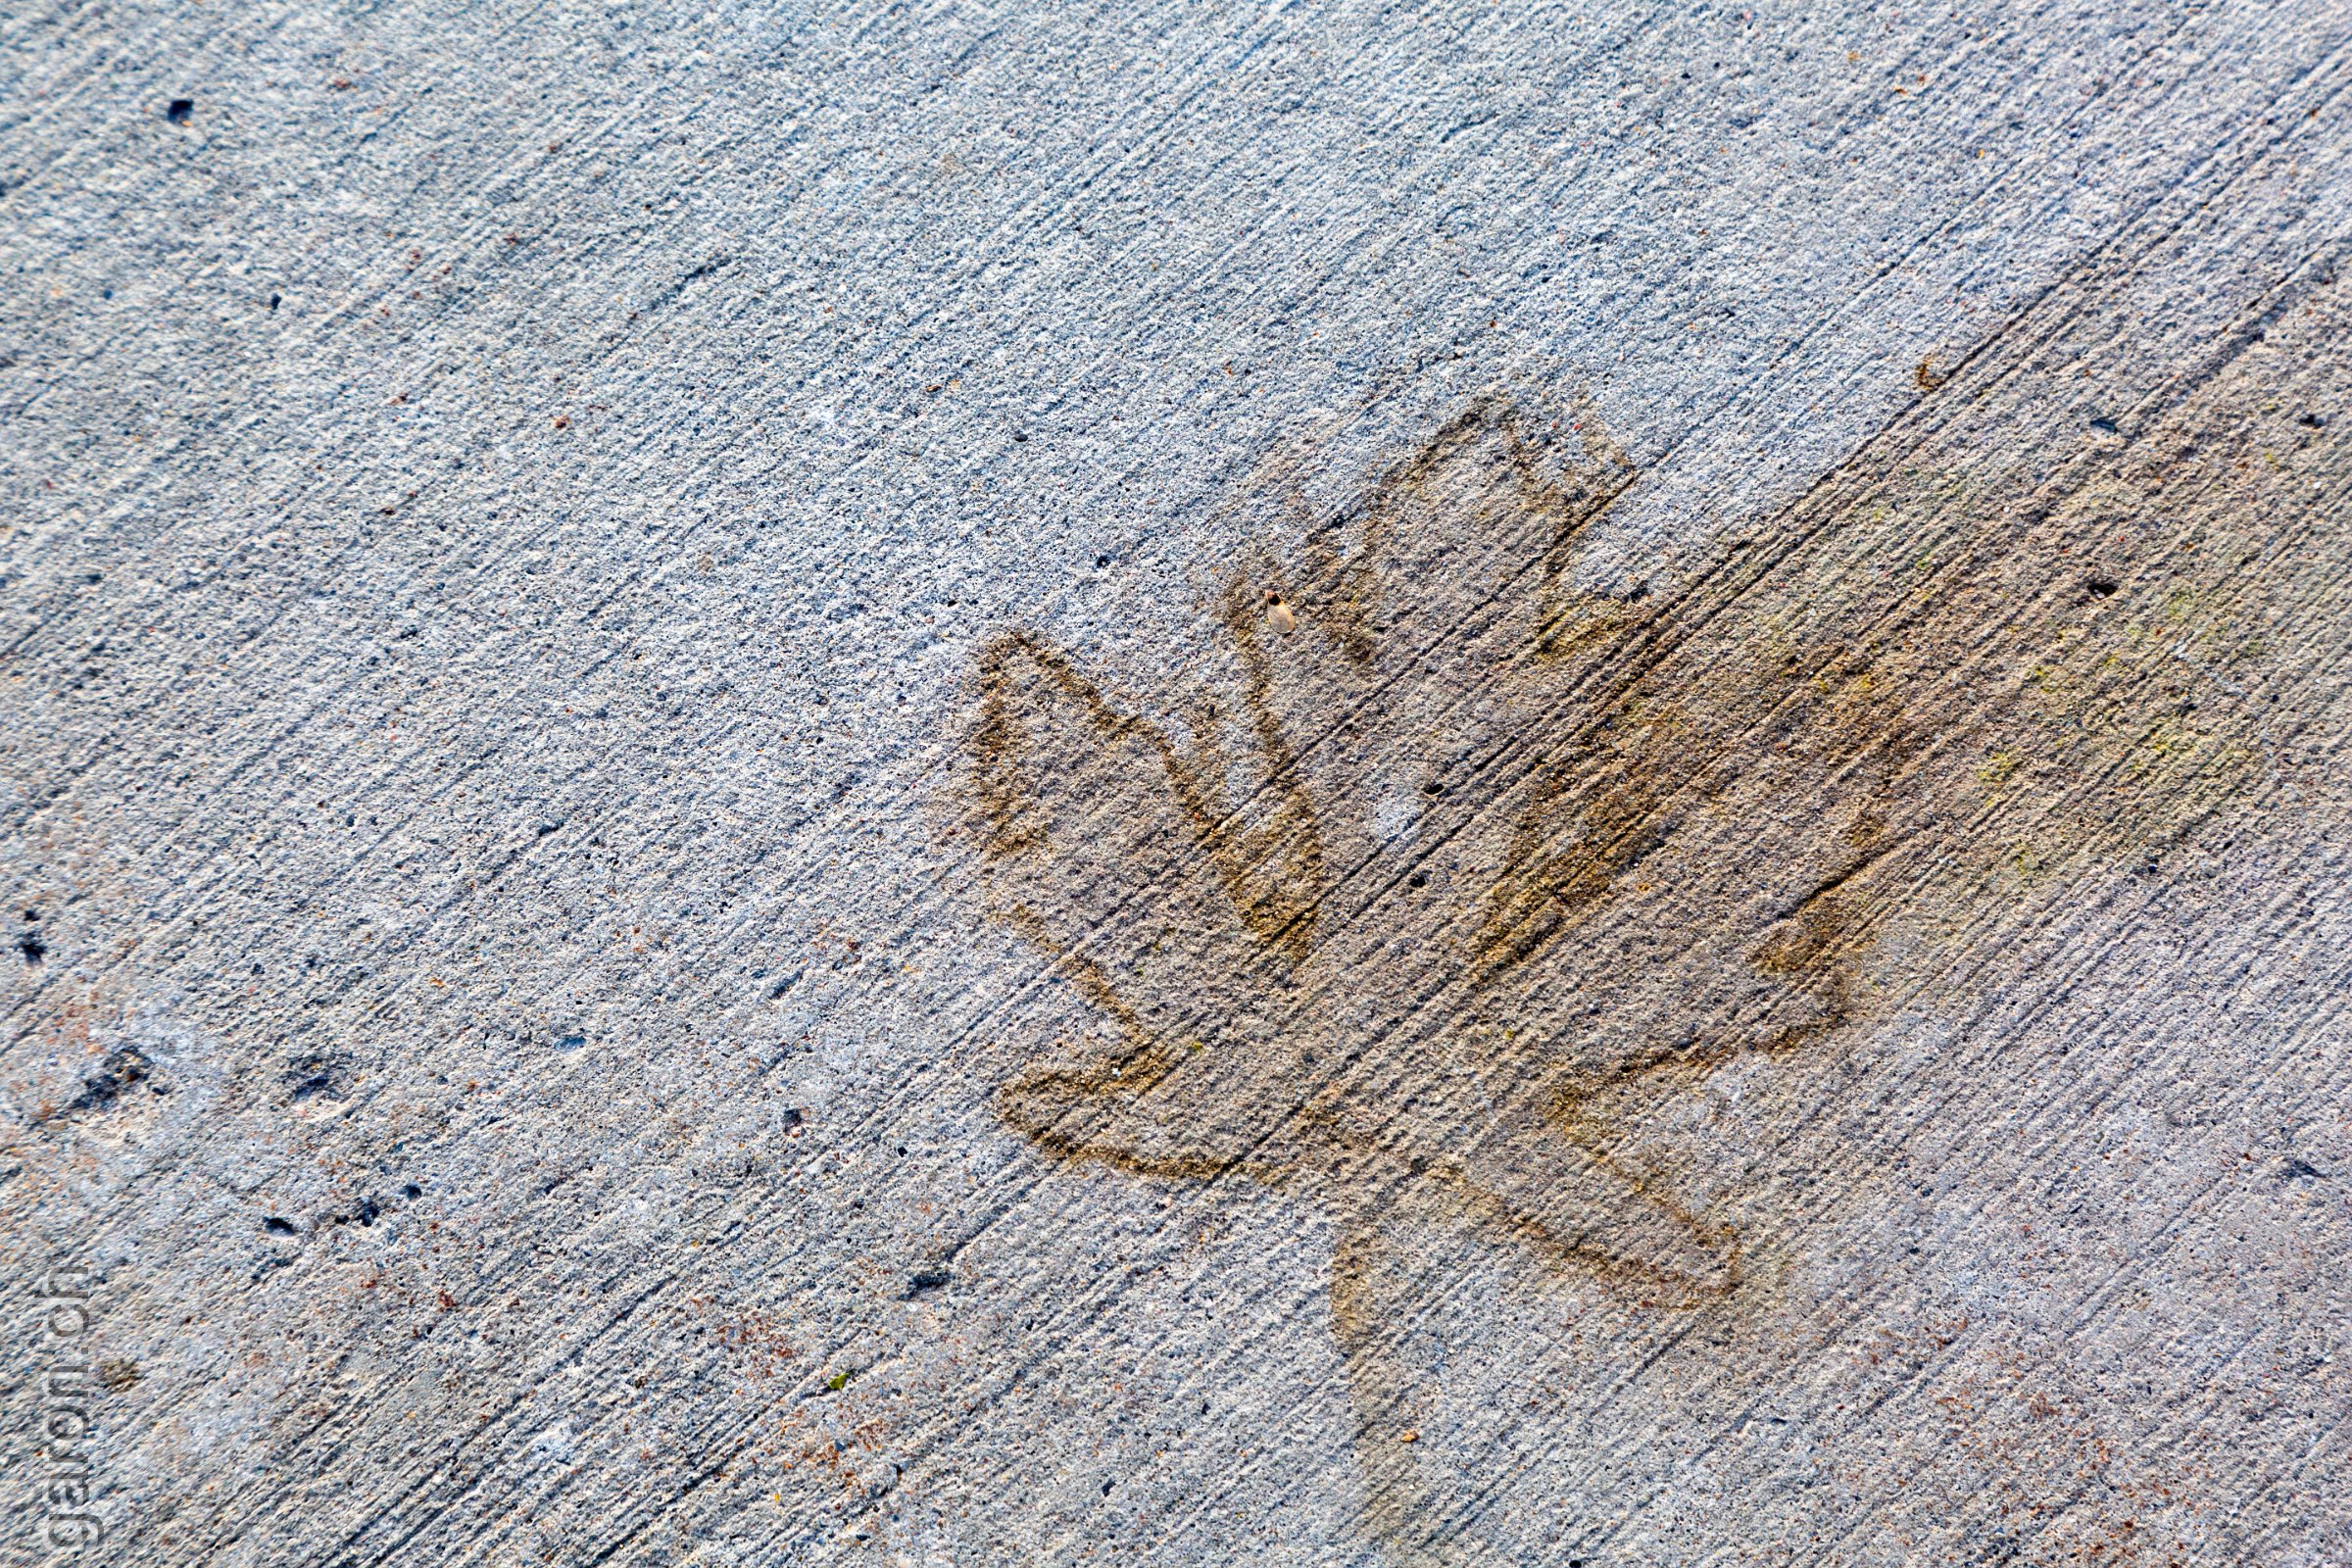 Ontario, Ottawa, print of a leaf on sidewalk 